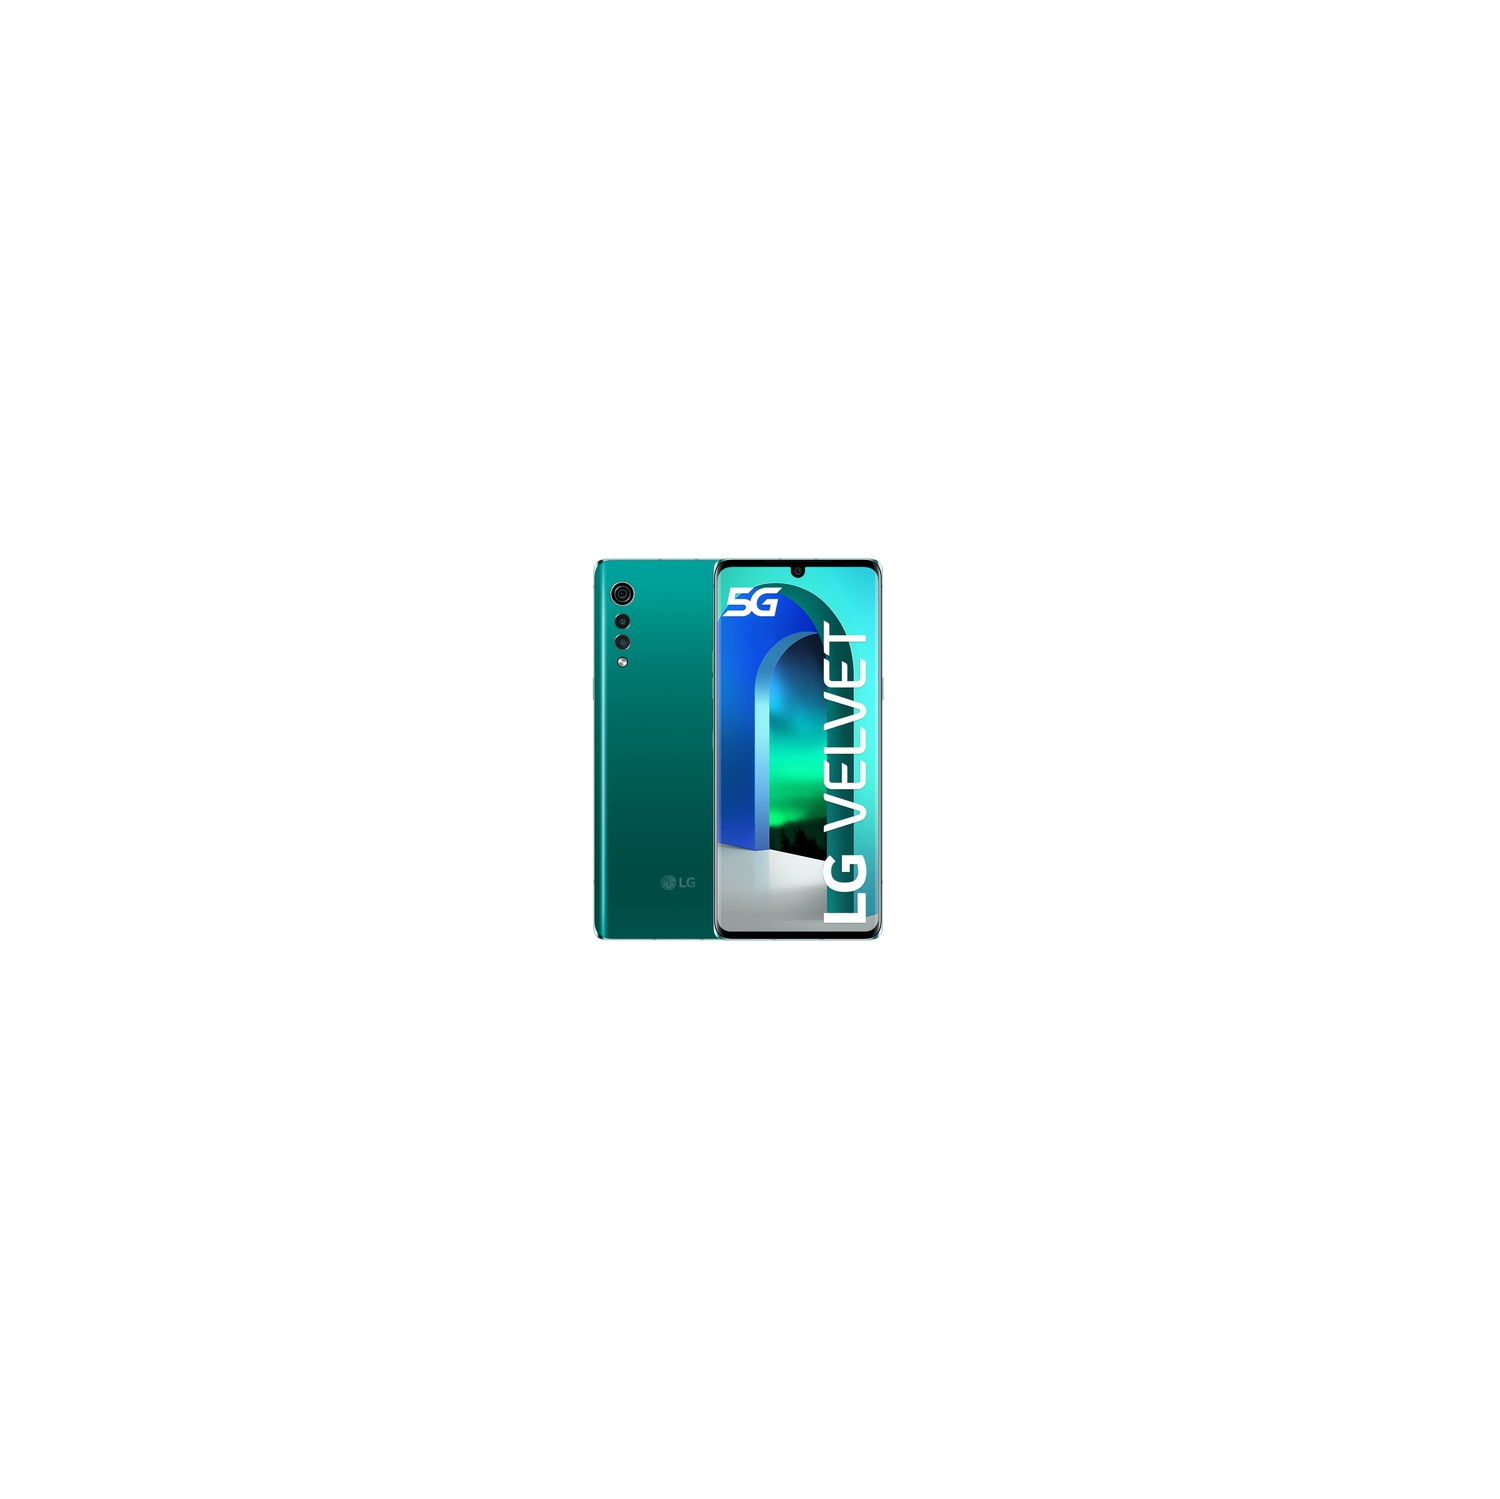 LG Velvet 5G 128GB Smartphone - Aurora Green - Unlocked - Certified Pre-Owned